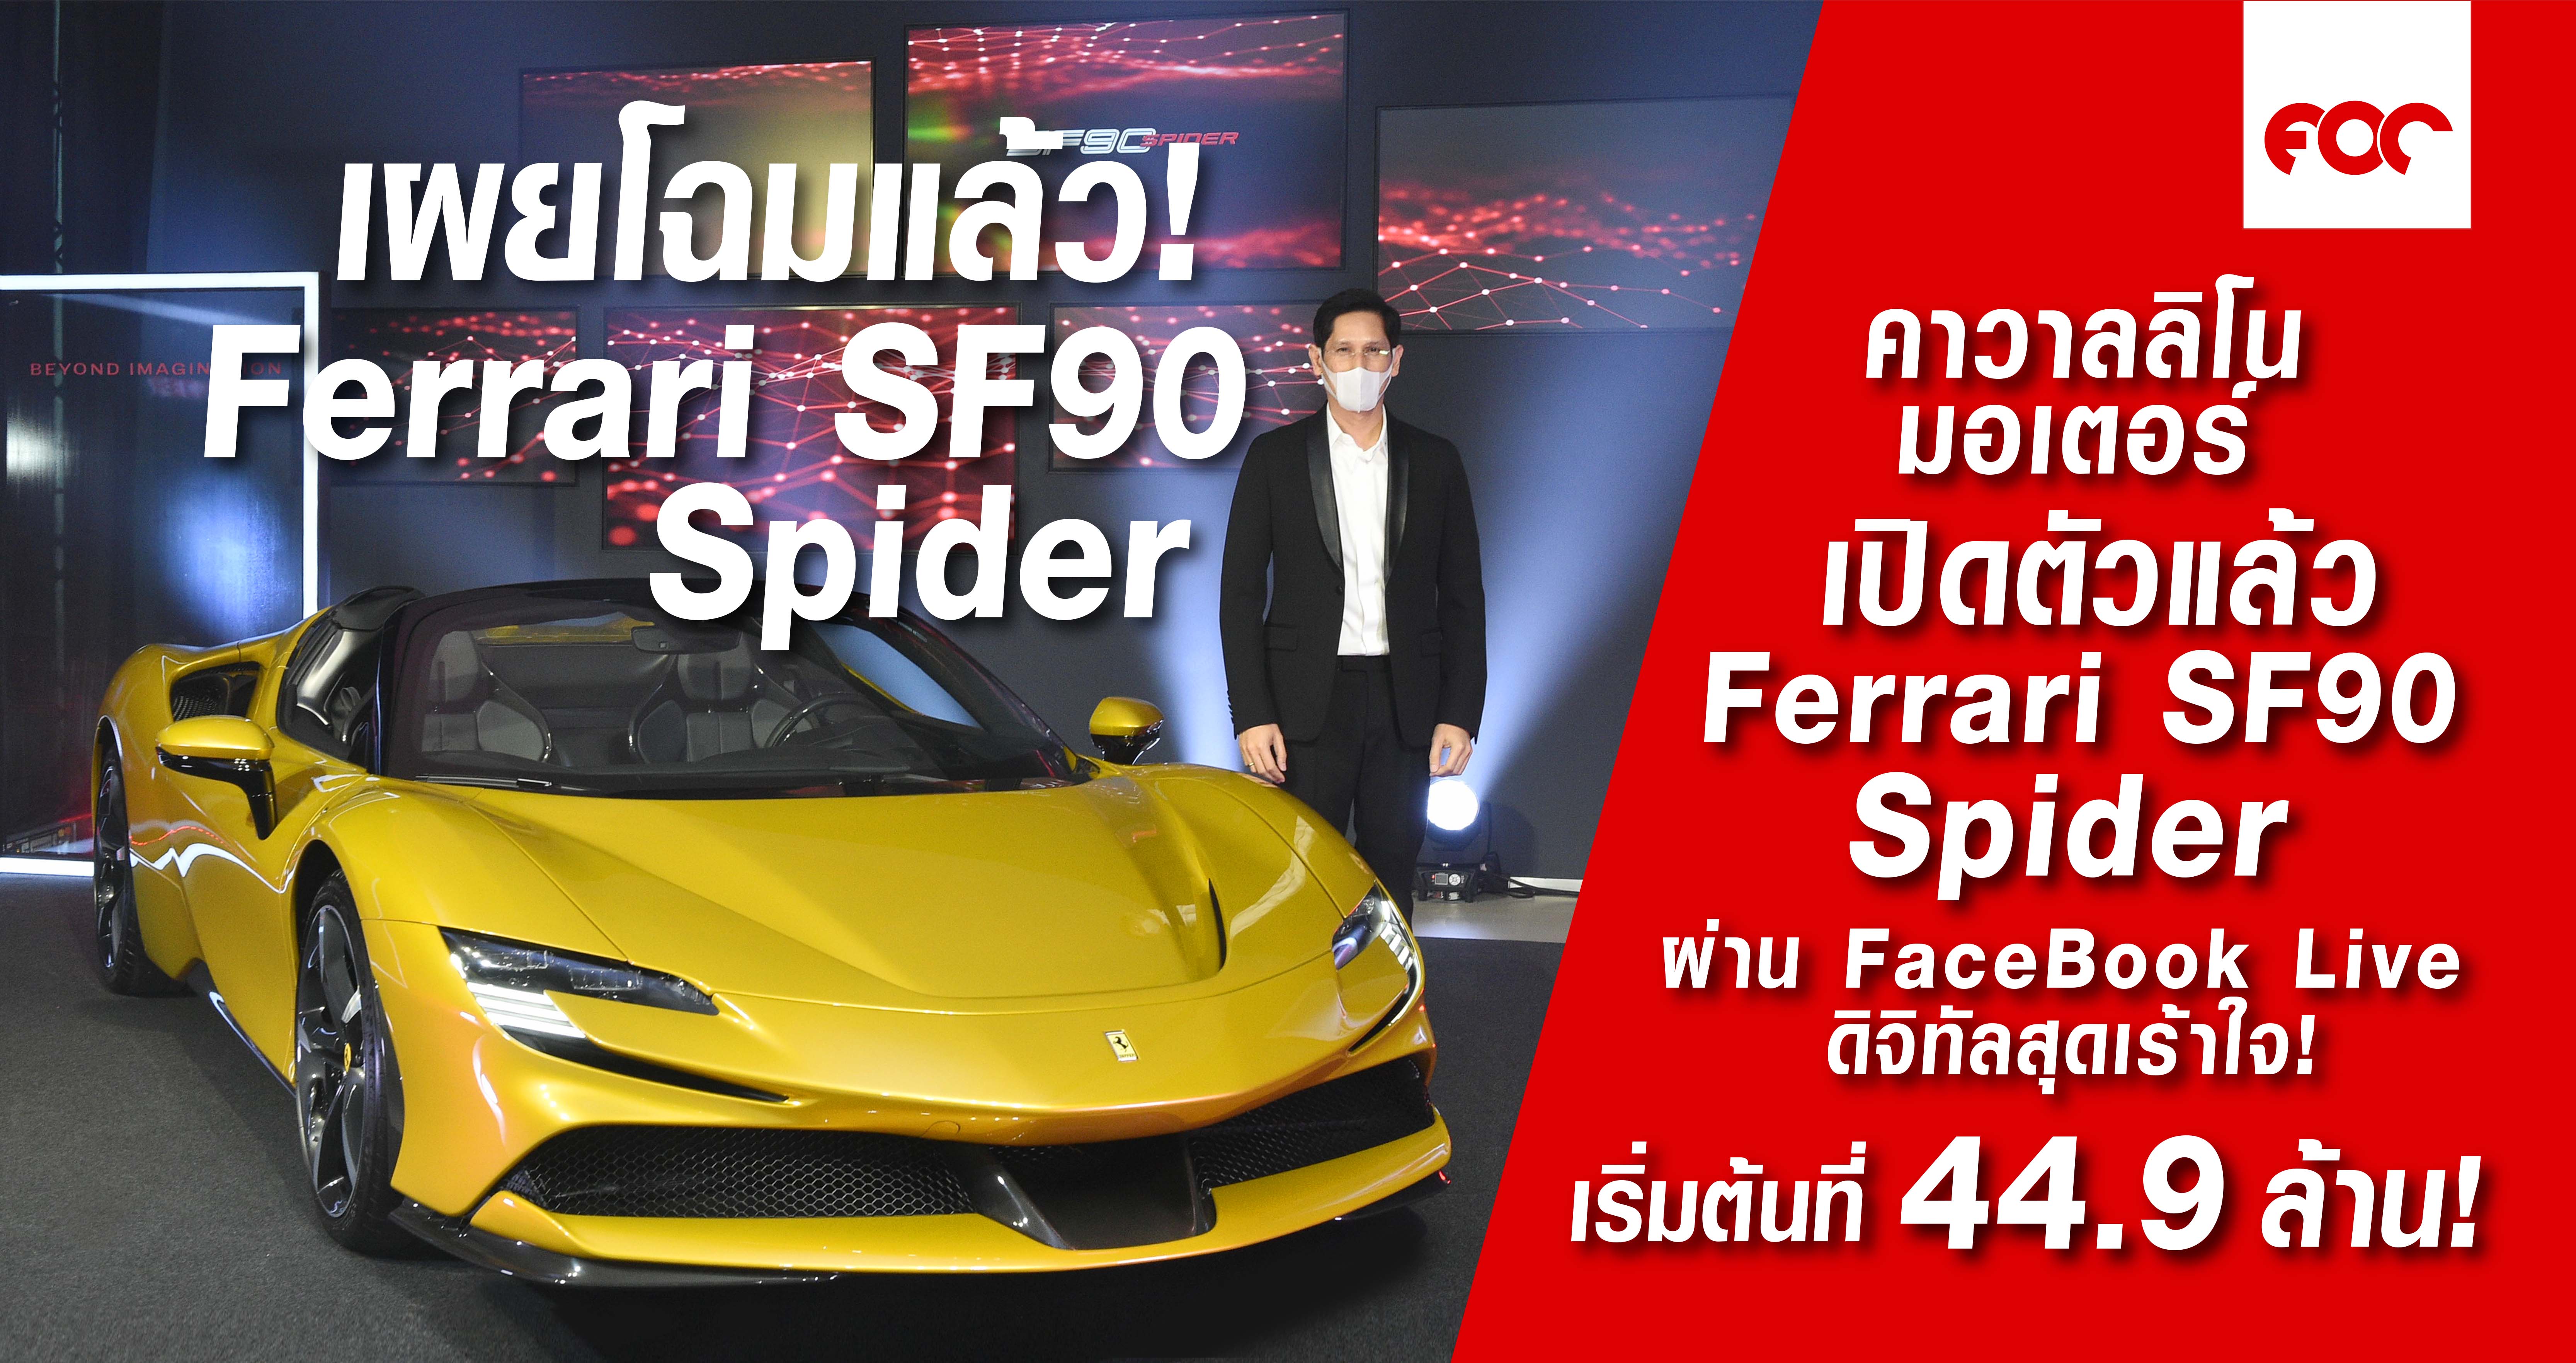 เฟอร์รารี่ SF90 Spider เผยโฉมแล้ว  ครั้งแรกในประเทศไทย กับ สุดยอดม้าลำพองเปิดประทุนทรงพลัง ชมผ่าน FB Live ในรูปแบบดิจิทัลสุดเร้าใจ